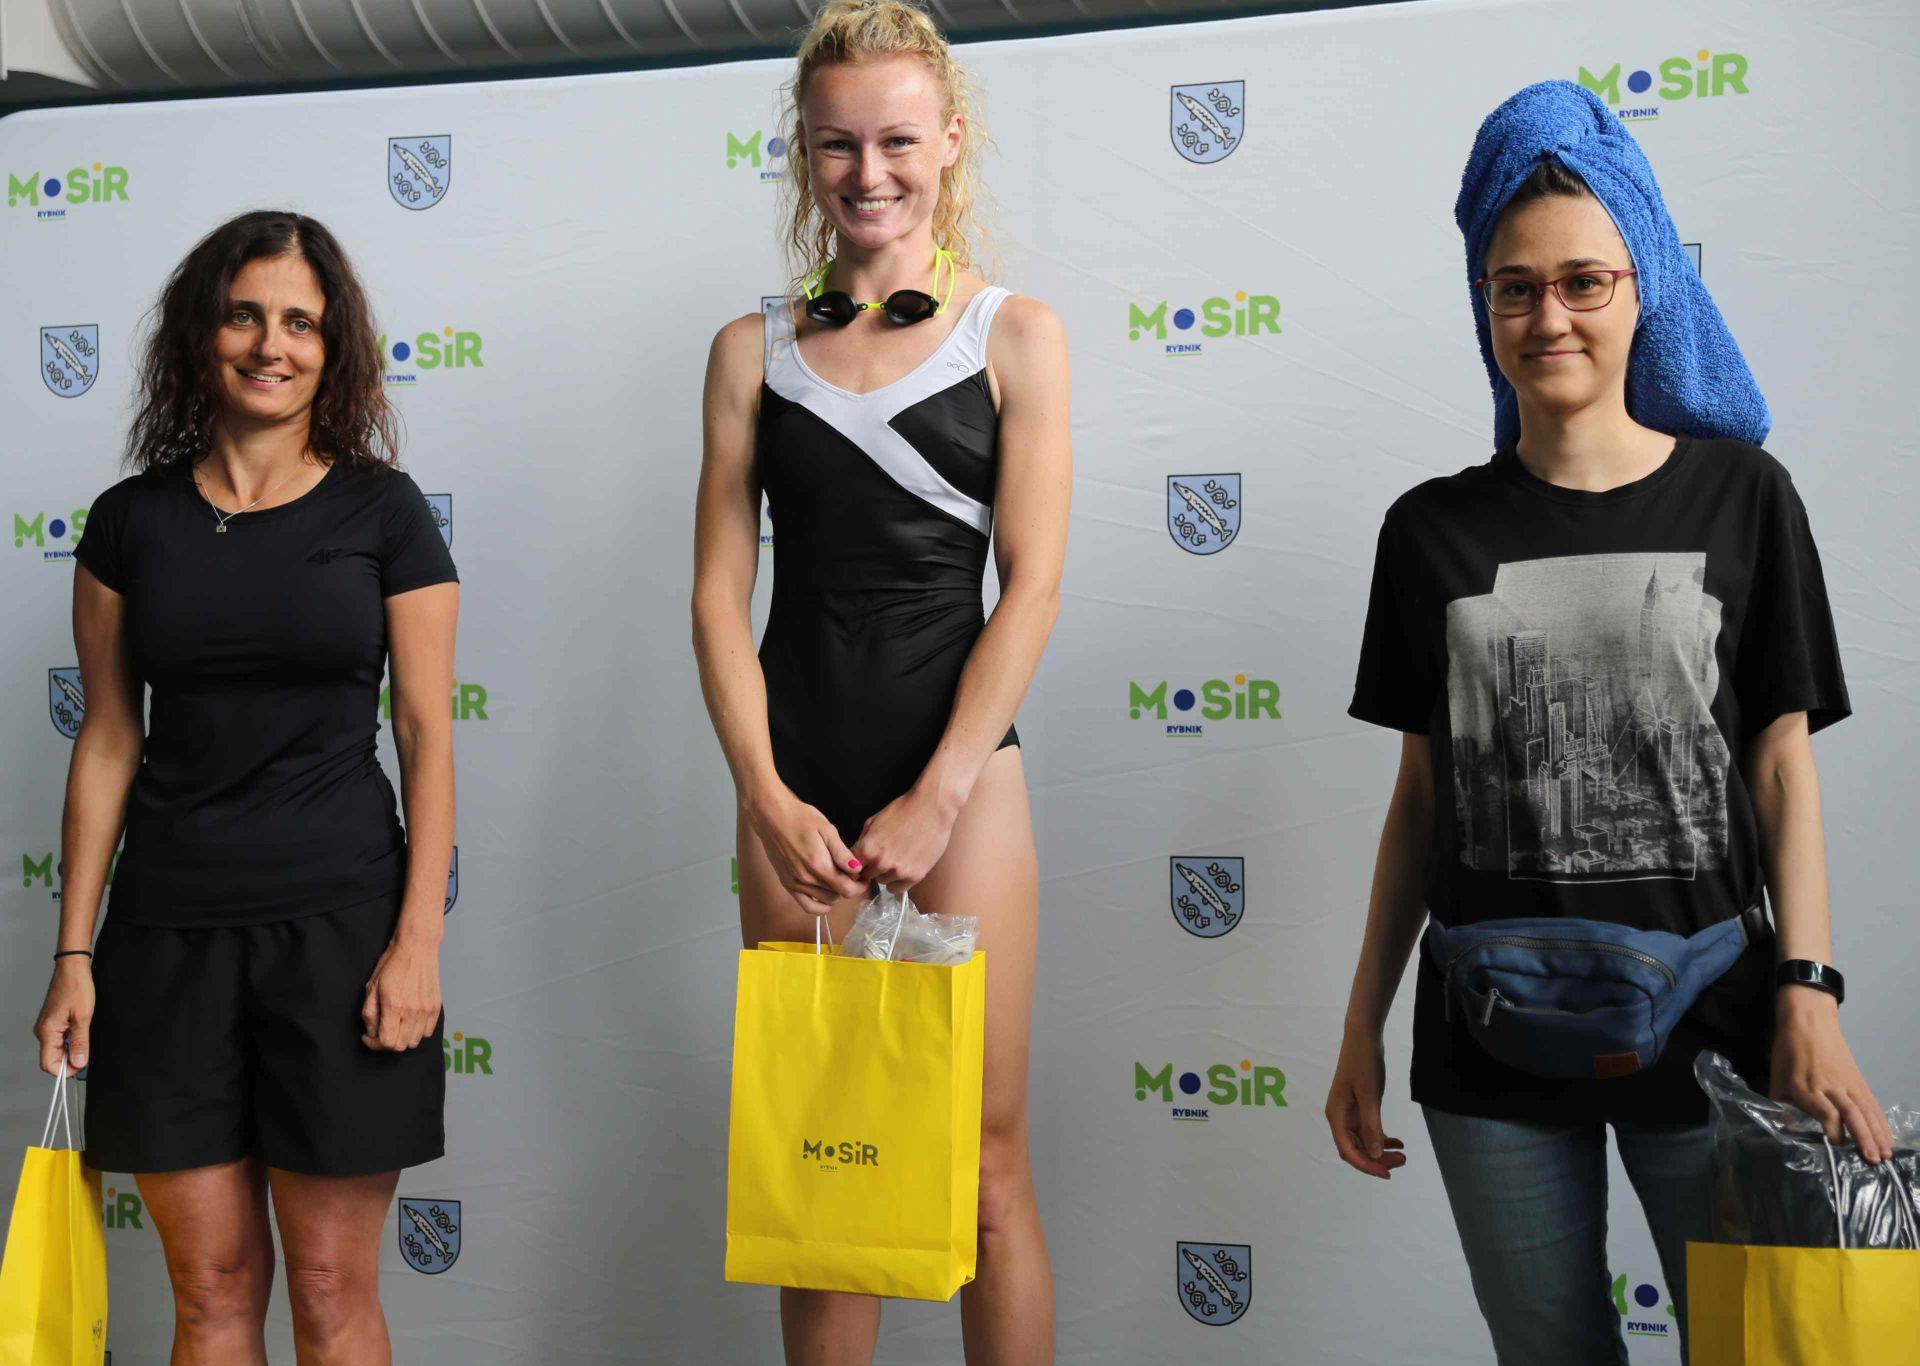 Na podium zmieściły się wszystkie zawodniczki biorące udział w mistrzostwach. Od lewej: Magdalena Kasprzak, Maria Prosolovskaia i Aleksandra Pfeifer. Zdj. Wacław Troszka